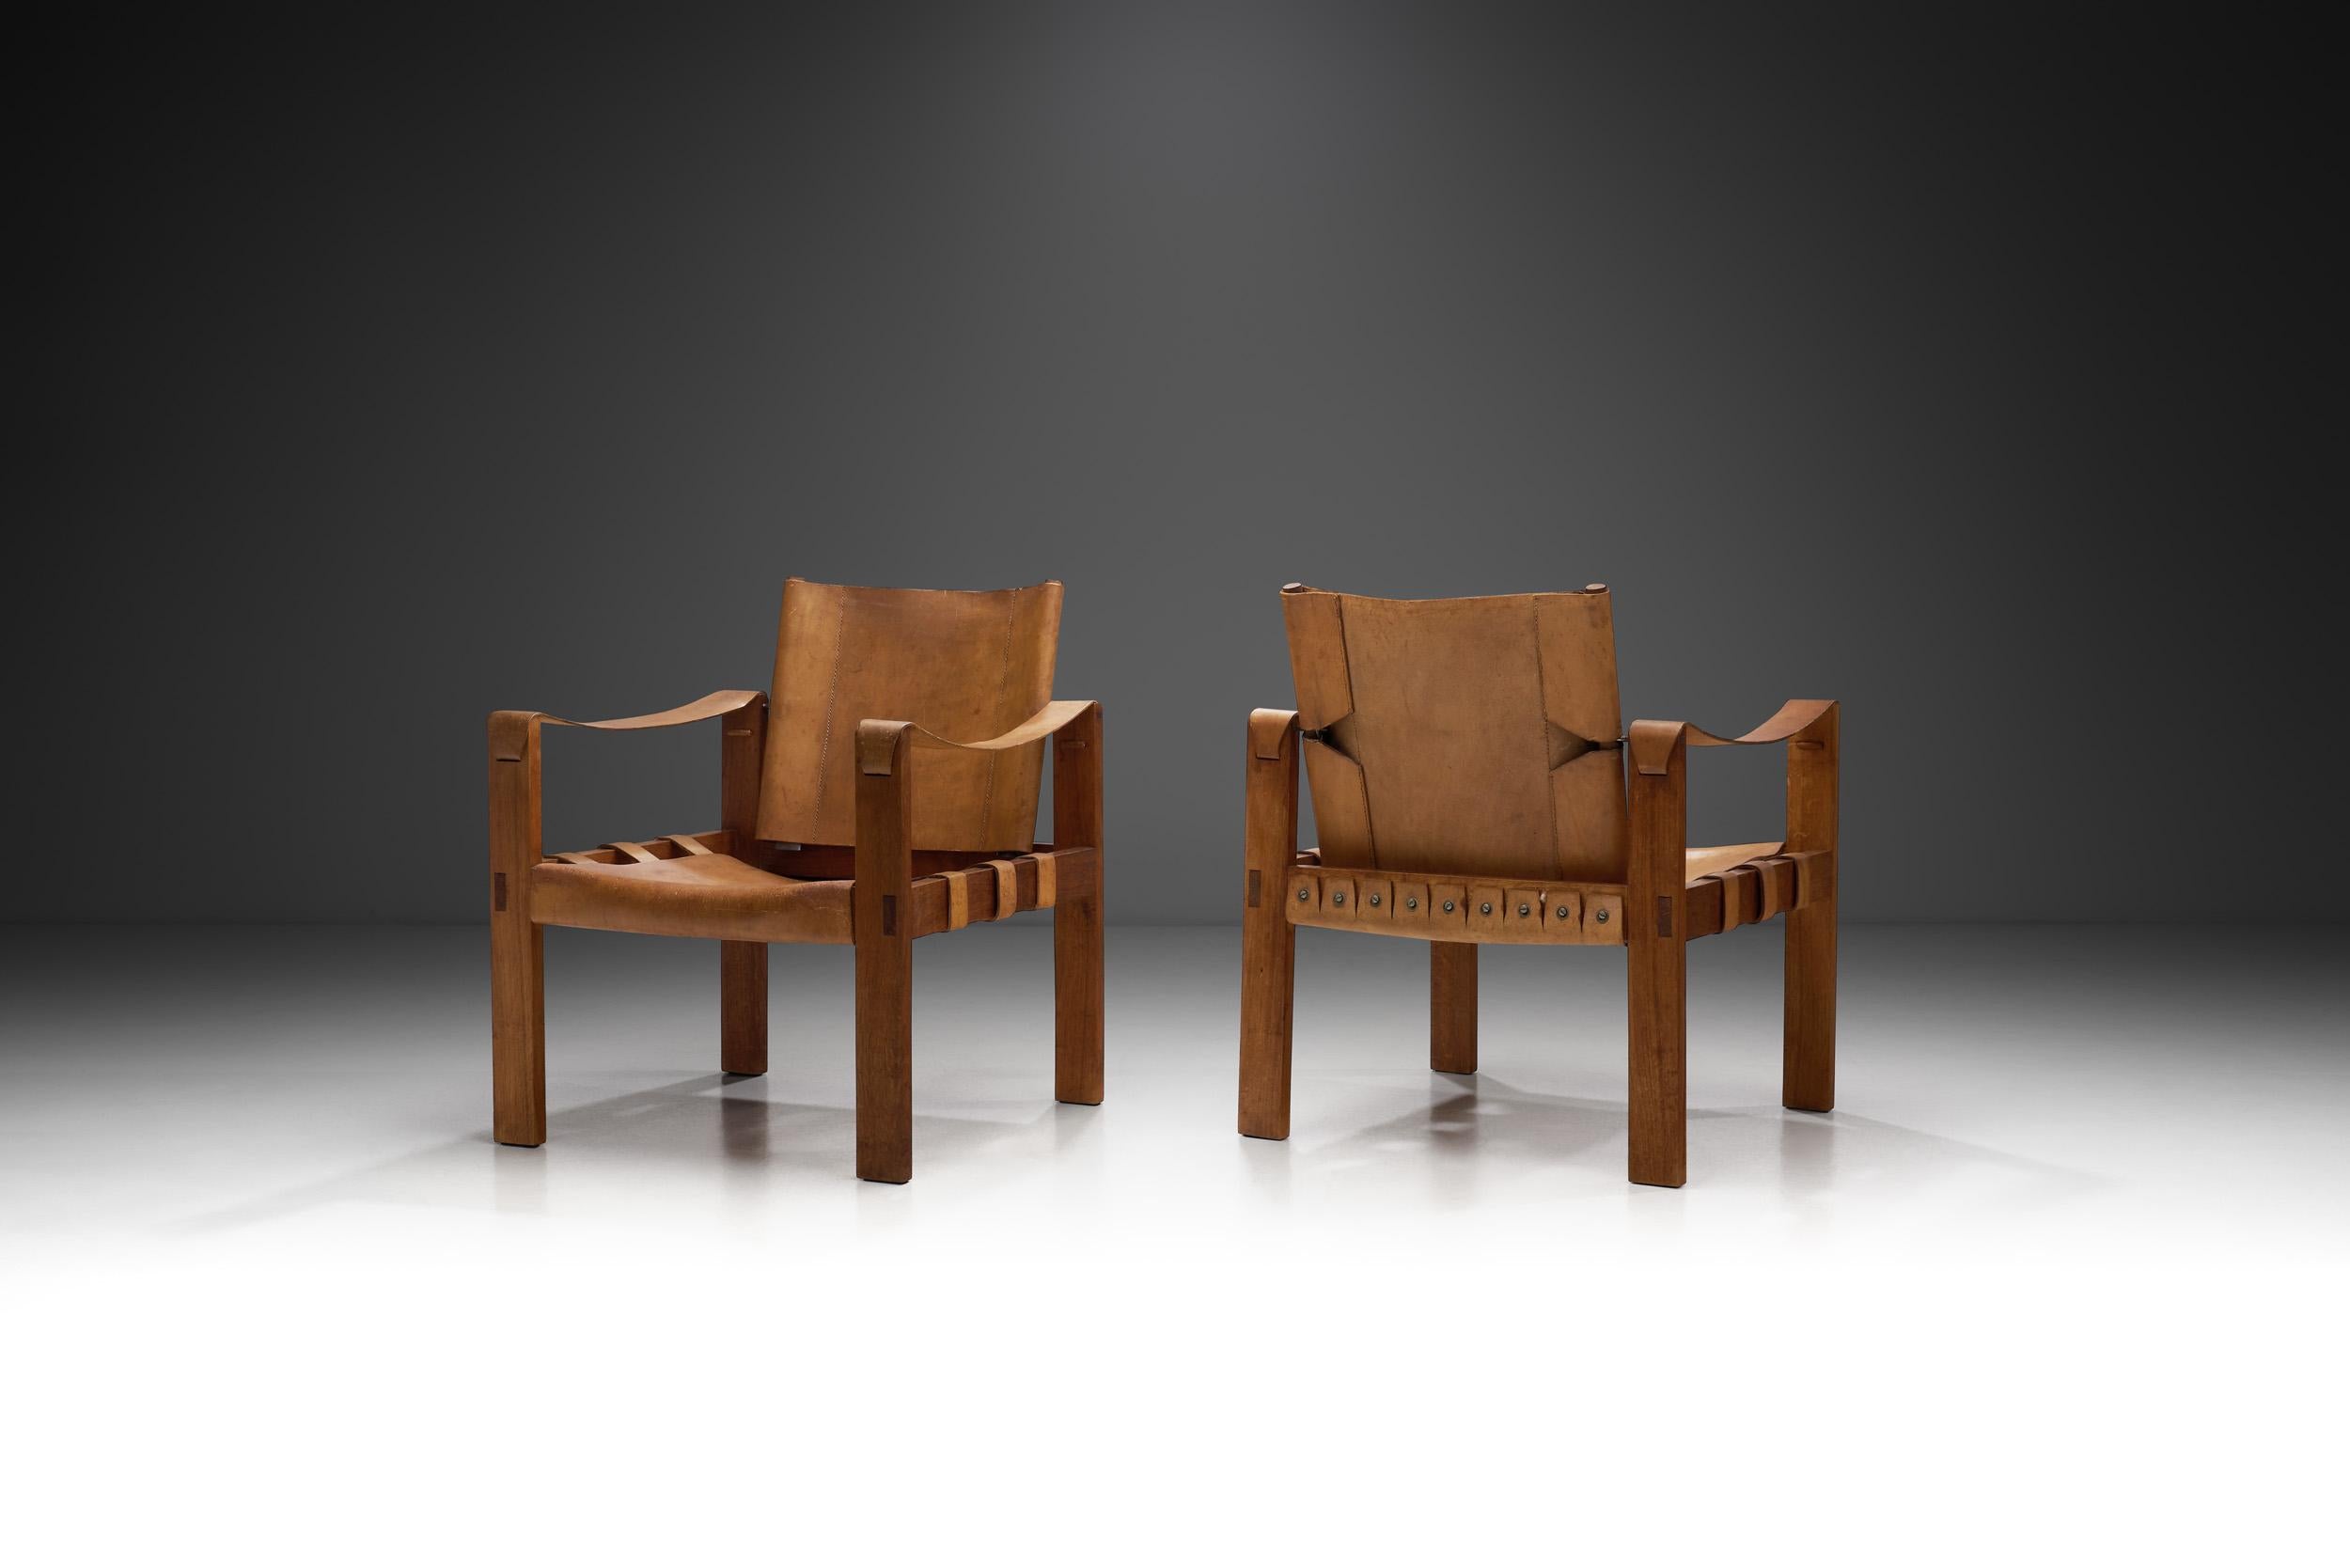 Née de l'aventure et de l'aspect pratique, la chaise safari a transcendé ses origines du XVIIIe siècle, où elle était transportée dans les grands espaces, pour devenir une icône appréciée du design. Ici, l'association classique de l'élégant cuir